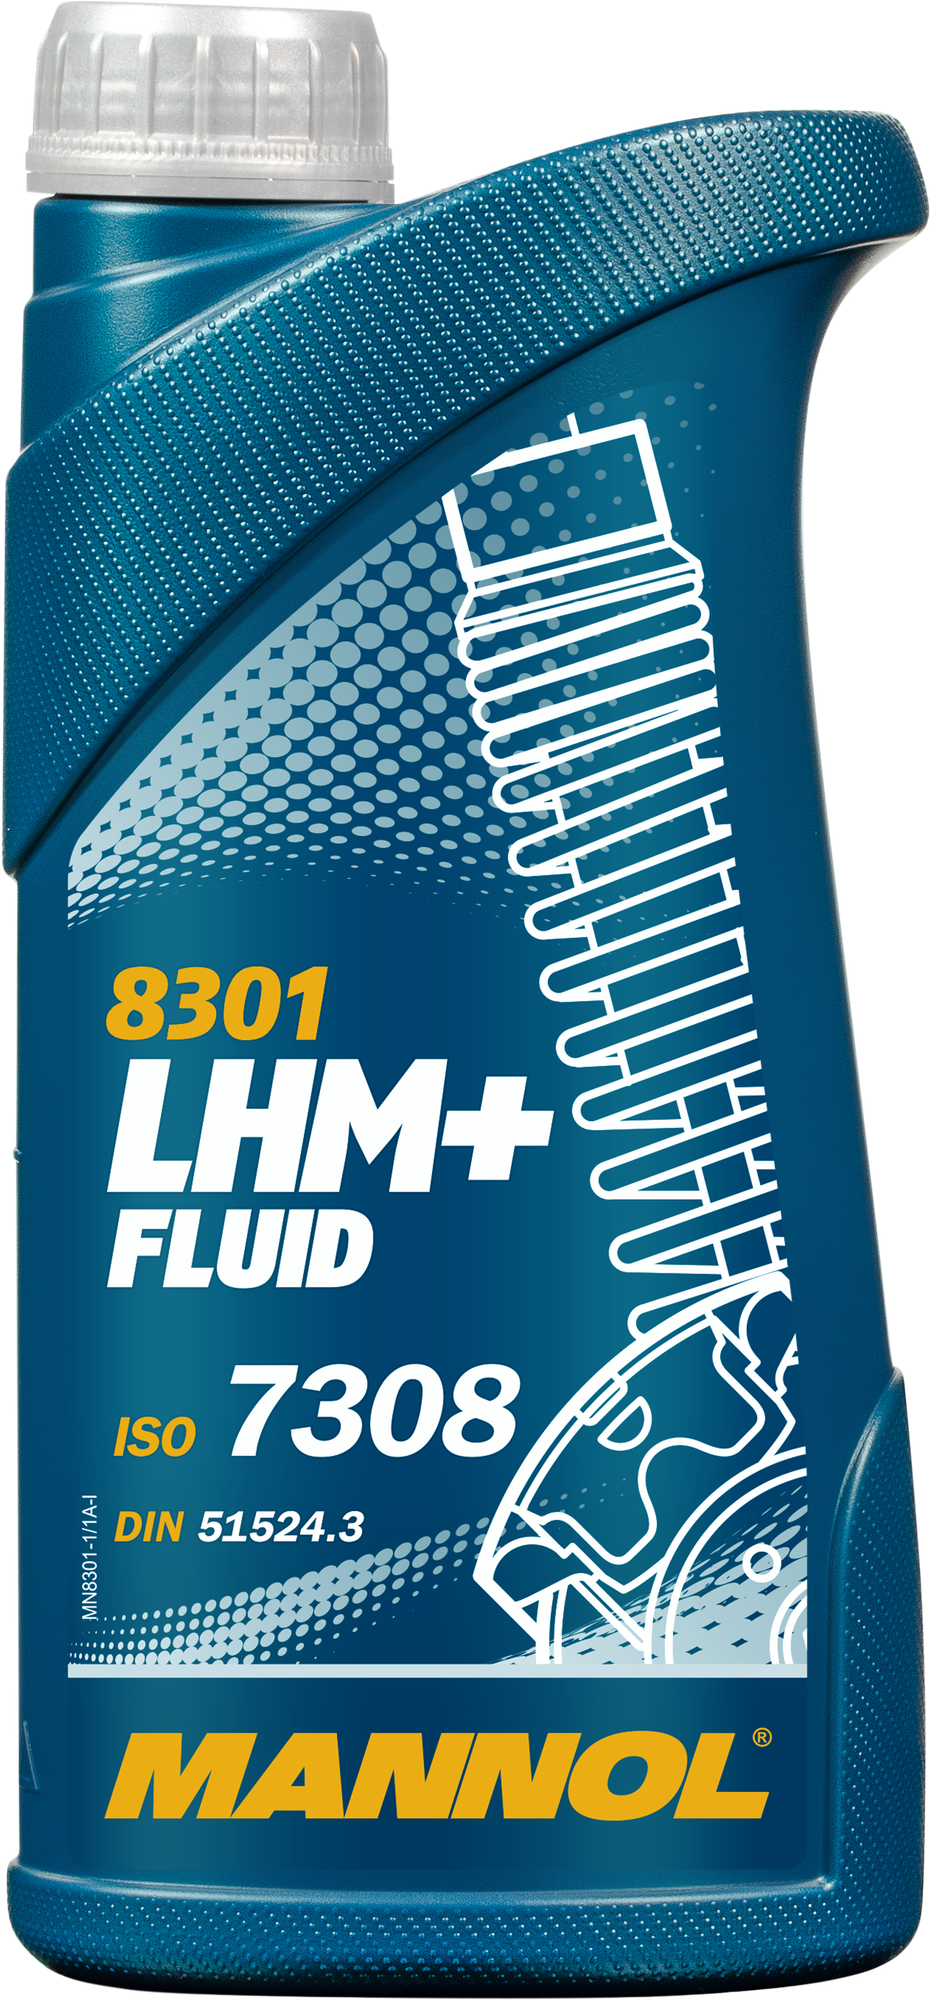 Гидравлическая жидкость Mannol LHM + Fluid